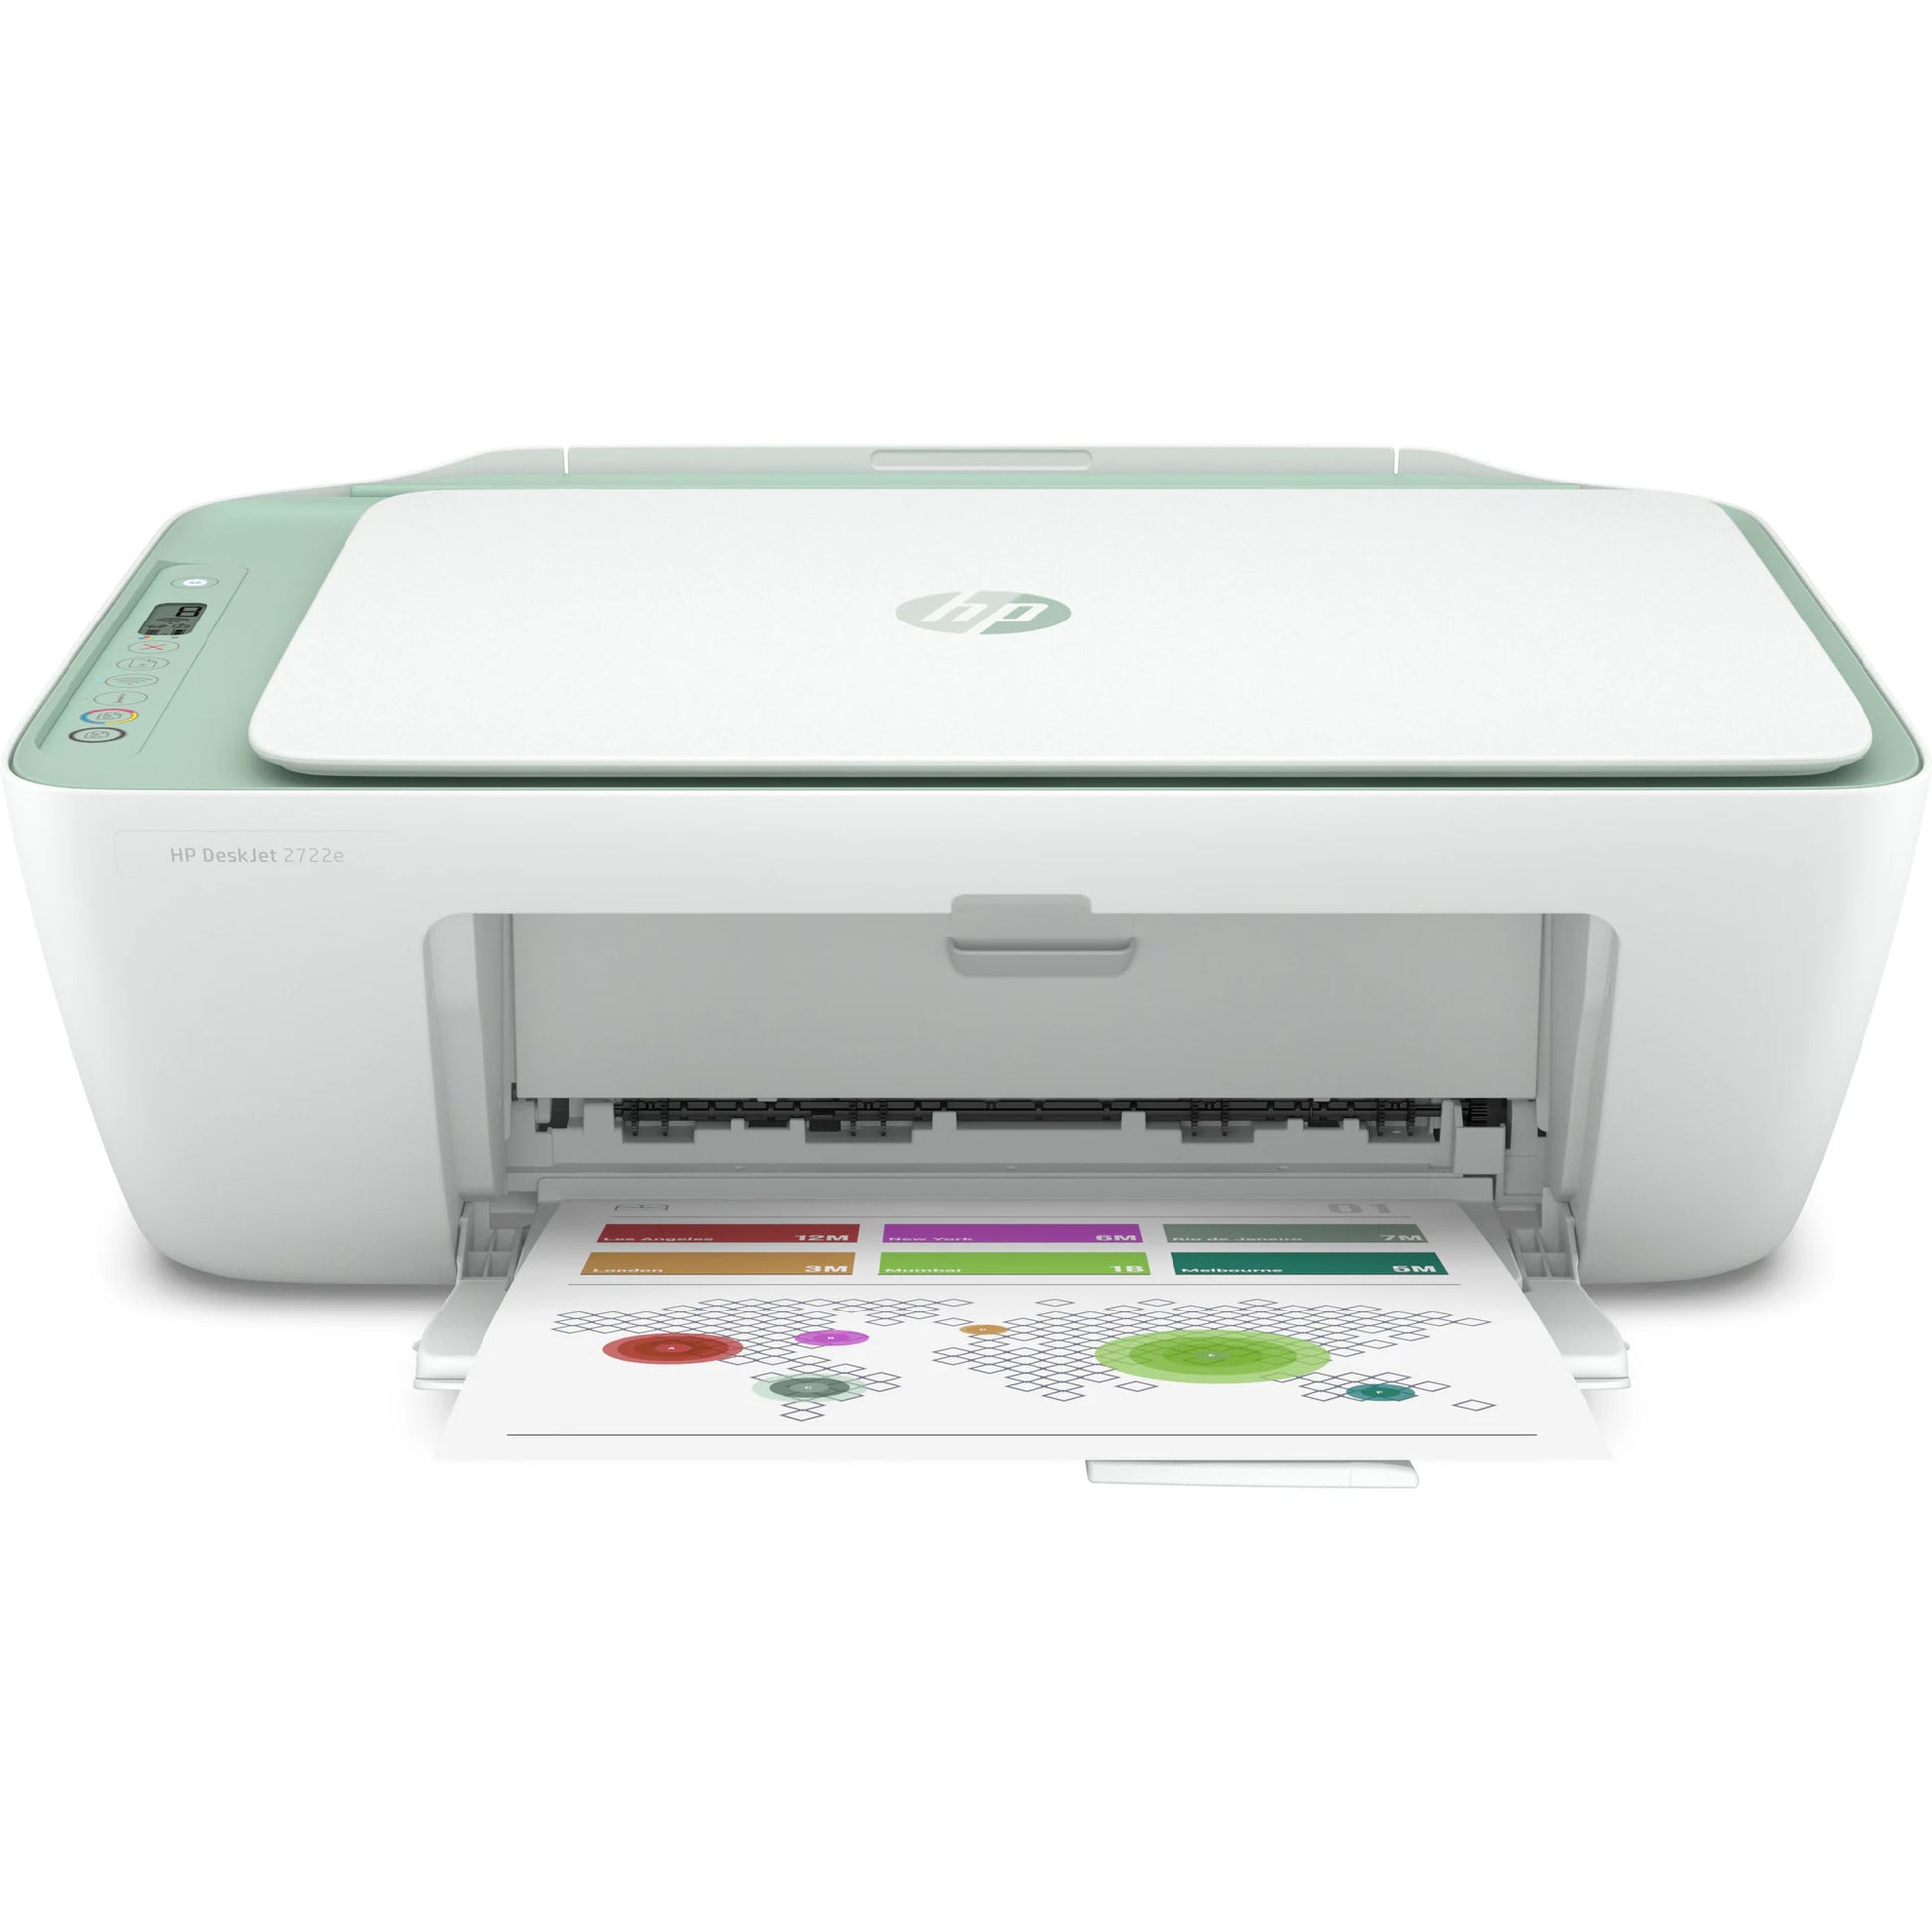 HP DeskJet All-in-One Printer | 2722e